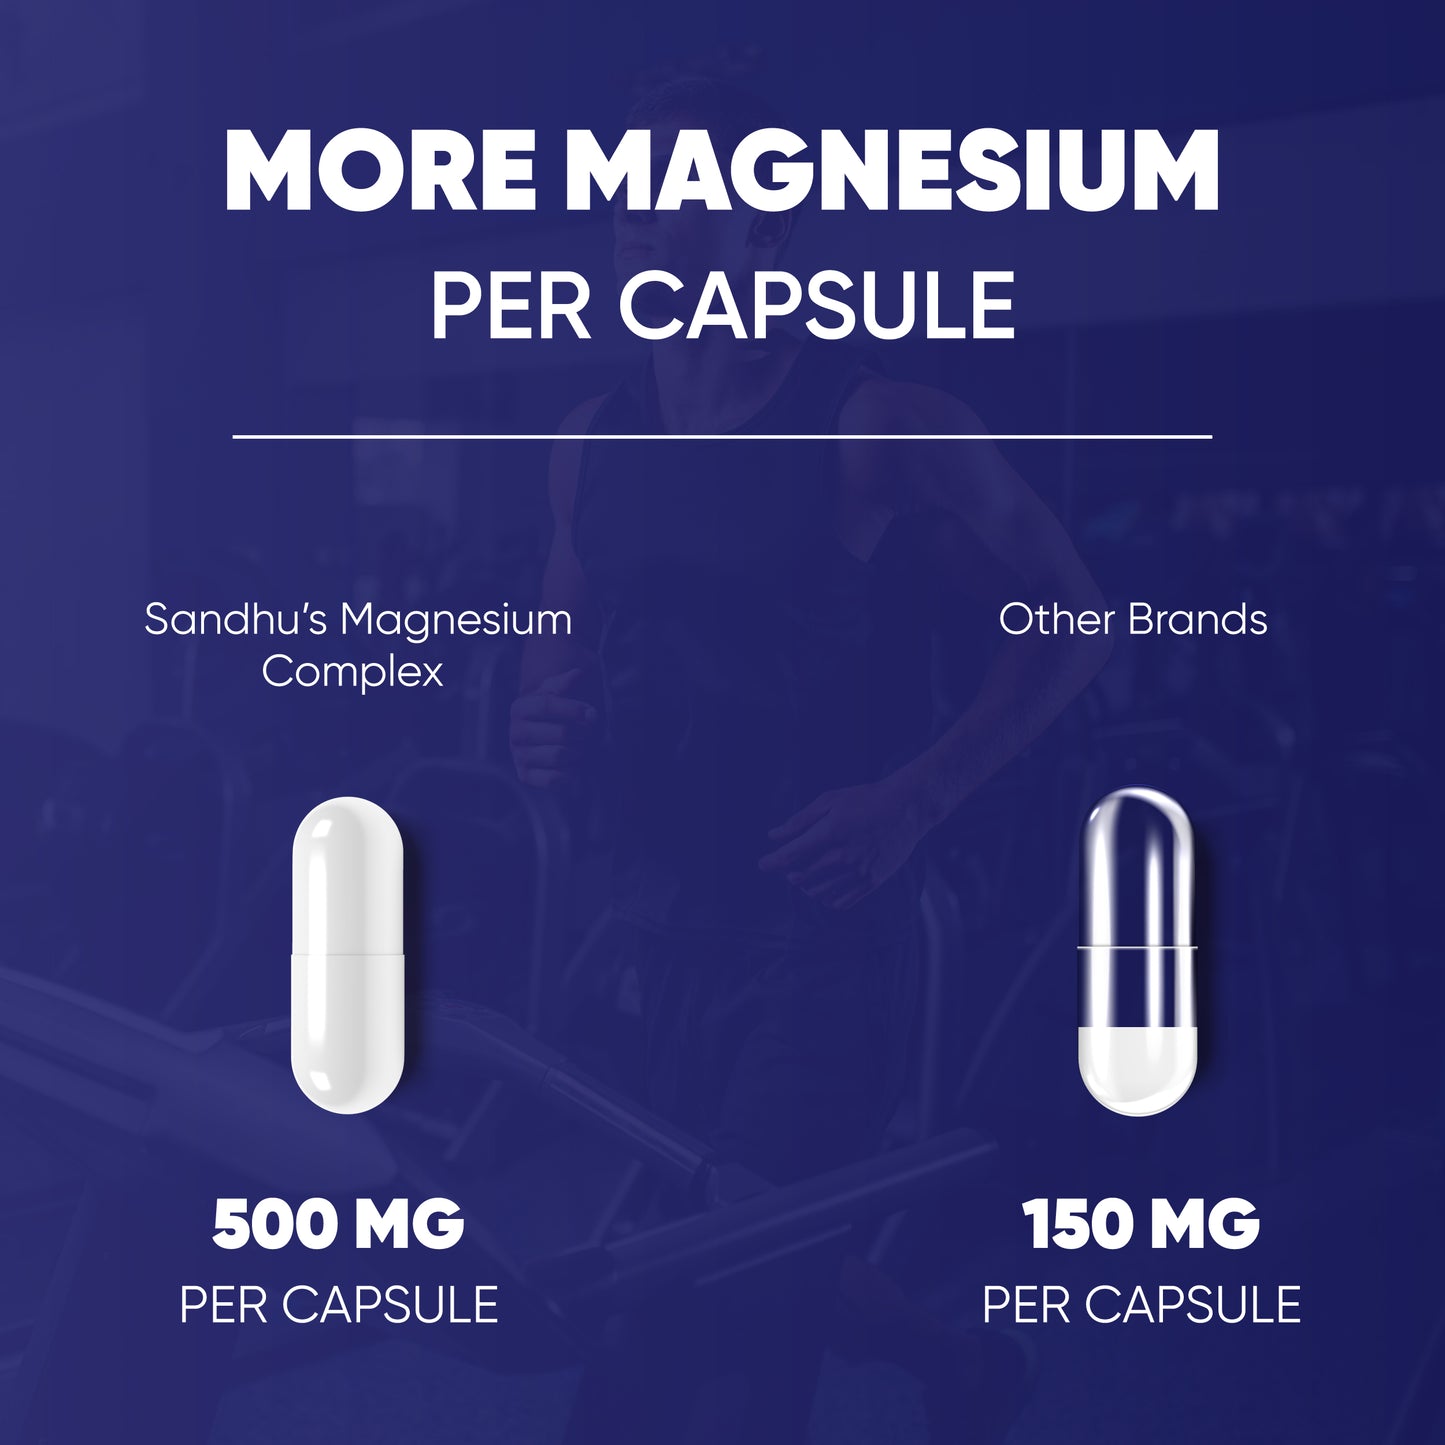 Magnesium Complex Capsules 90 Ct